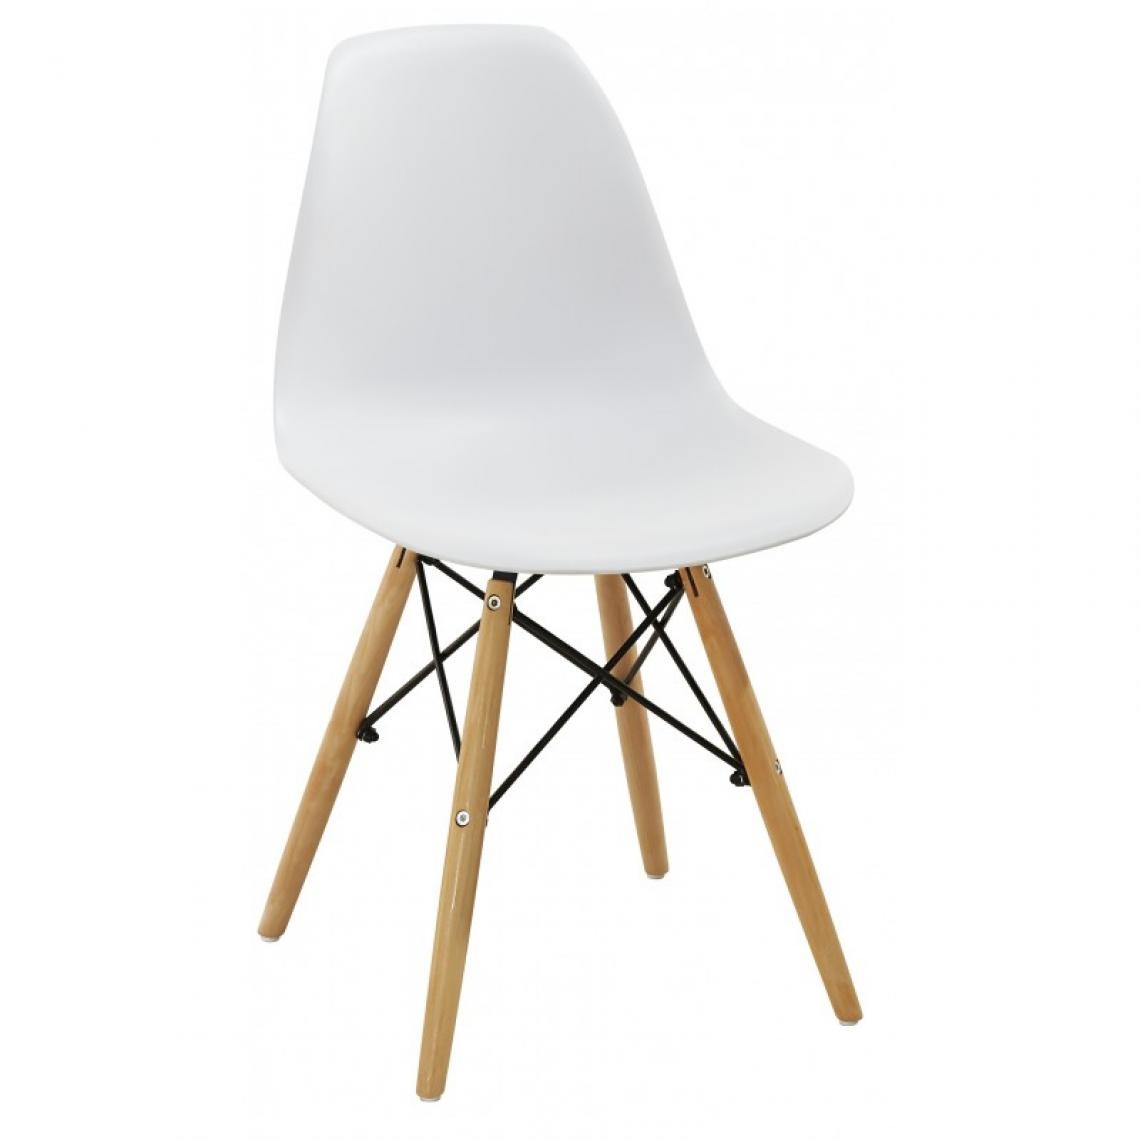 Webmarketpoint - Chaise moderne en polypropylène et bois ligne Momo blanc - Chaises